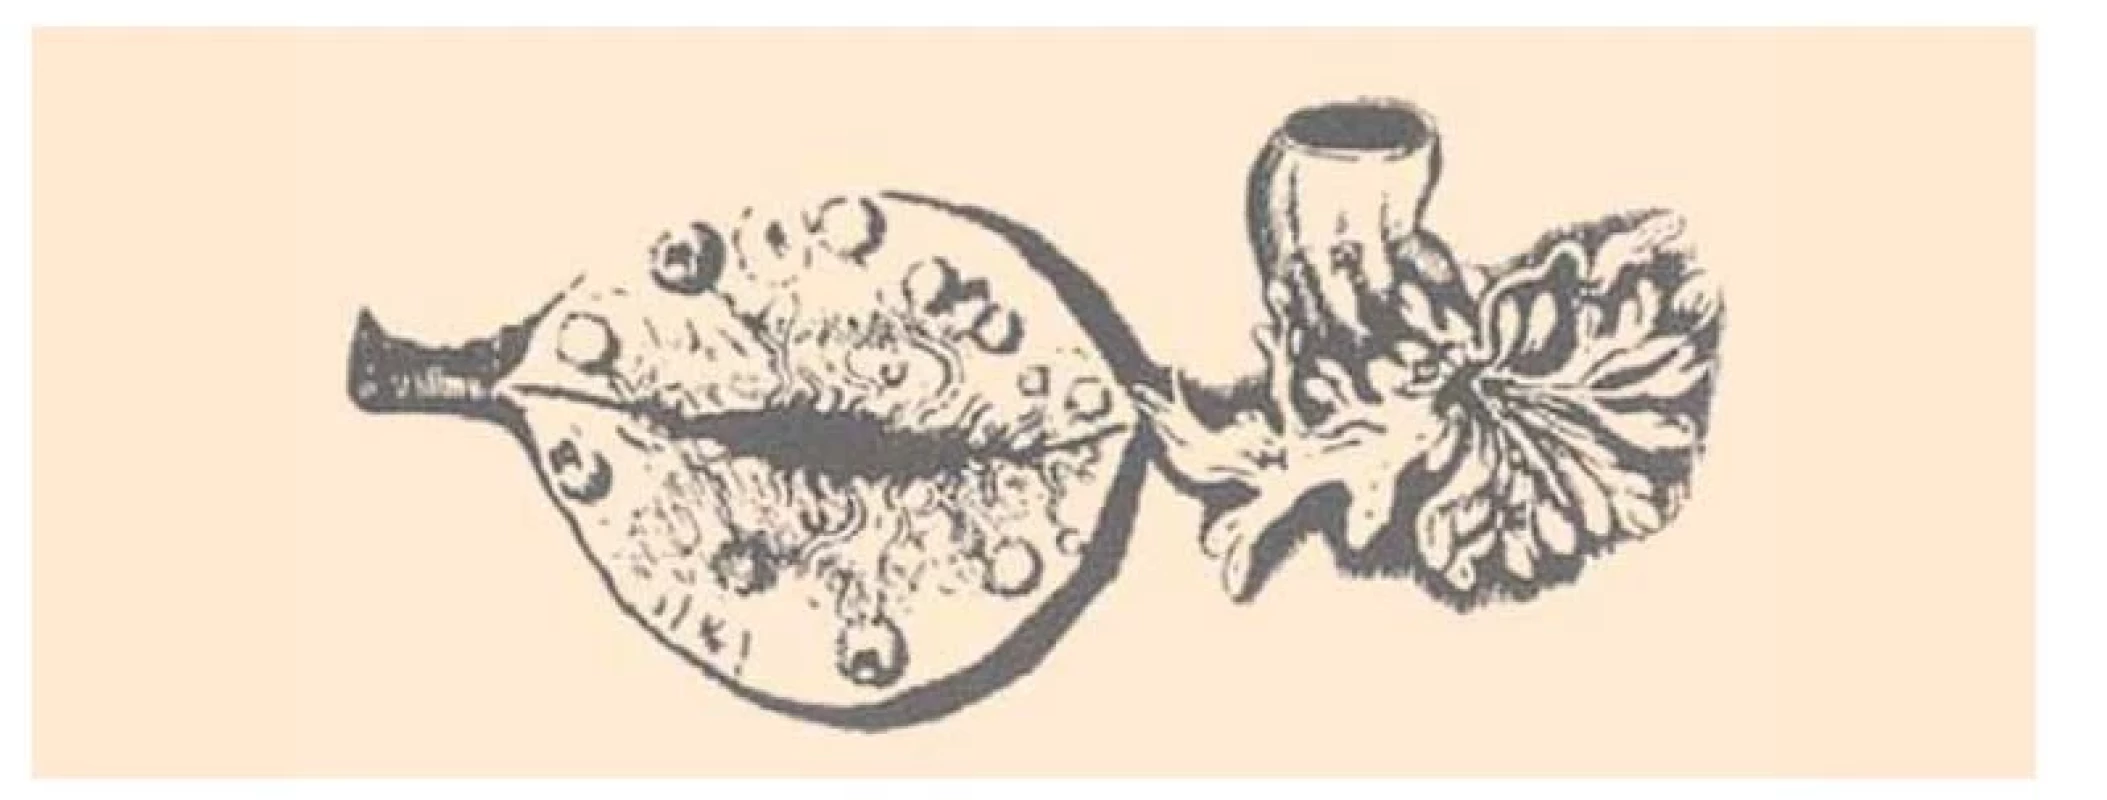 Nákres vaječníka a abdominálneho ústia vajíčkovodu z de Graafovho
diela De Mulierum Organis Generatione Inservientibus (1672).<br>
Fig. 2. Drawing of the ovary and the abdominal oviduct from de Graaf's
De Mulierum Organis Generatione Inservientibus (1672).